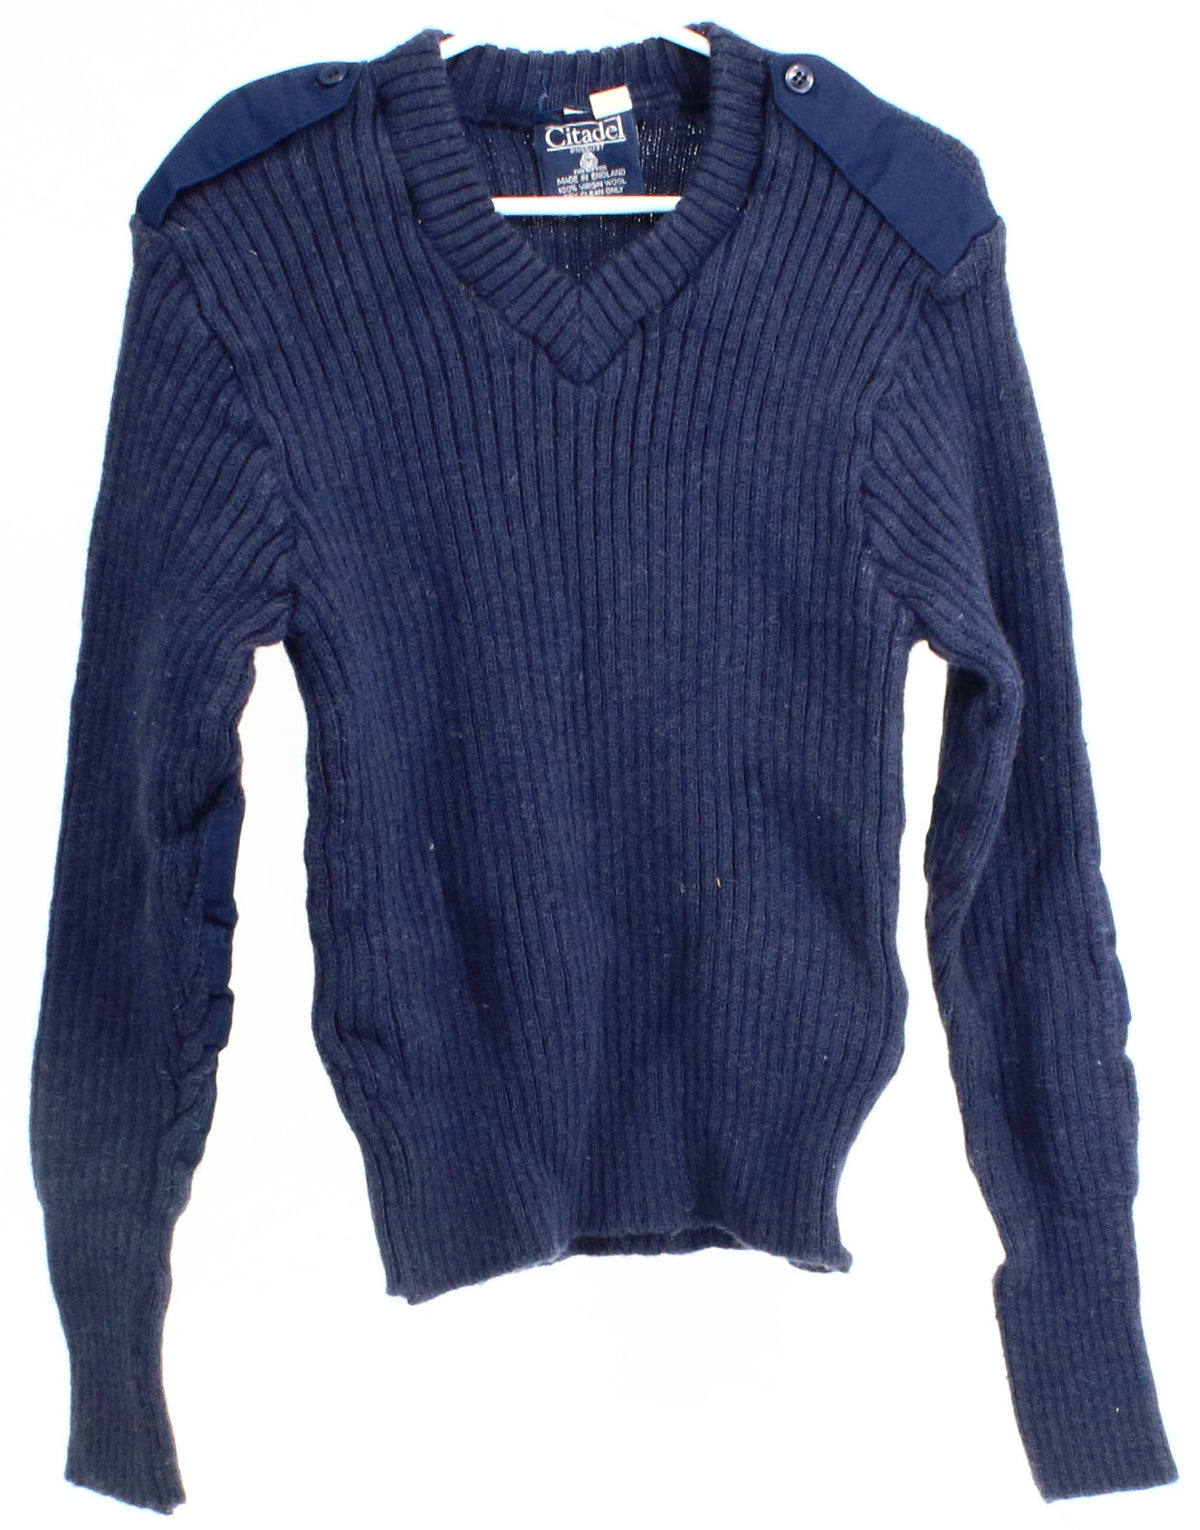 Citadel Navy Blue V-Neck Sweater